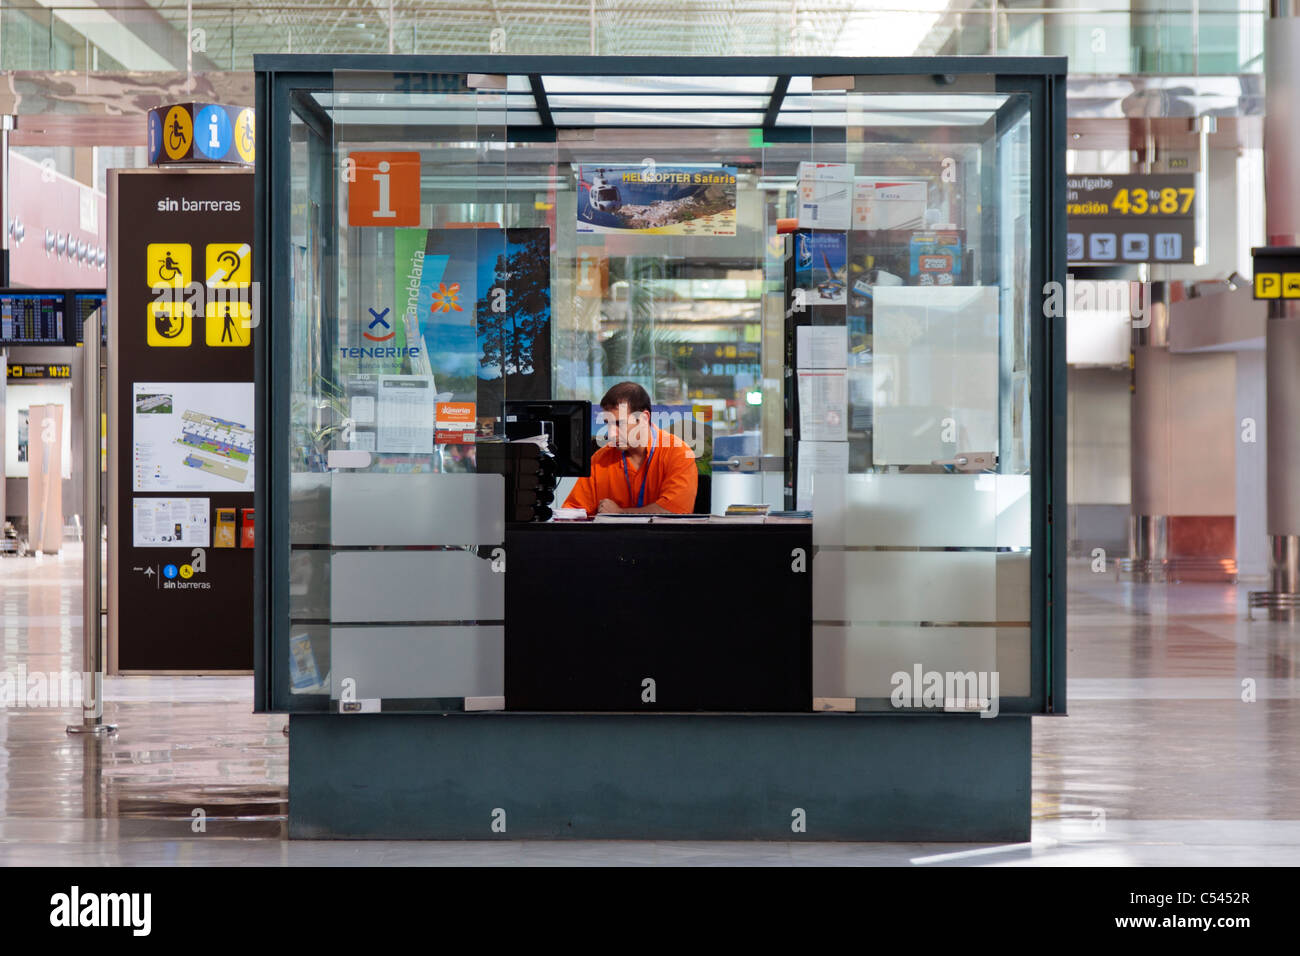 Kiosque d'information à l'aéroport de Ténérife Sud Îles Canaries Espagne Banque D'Images